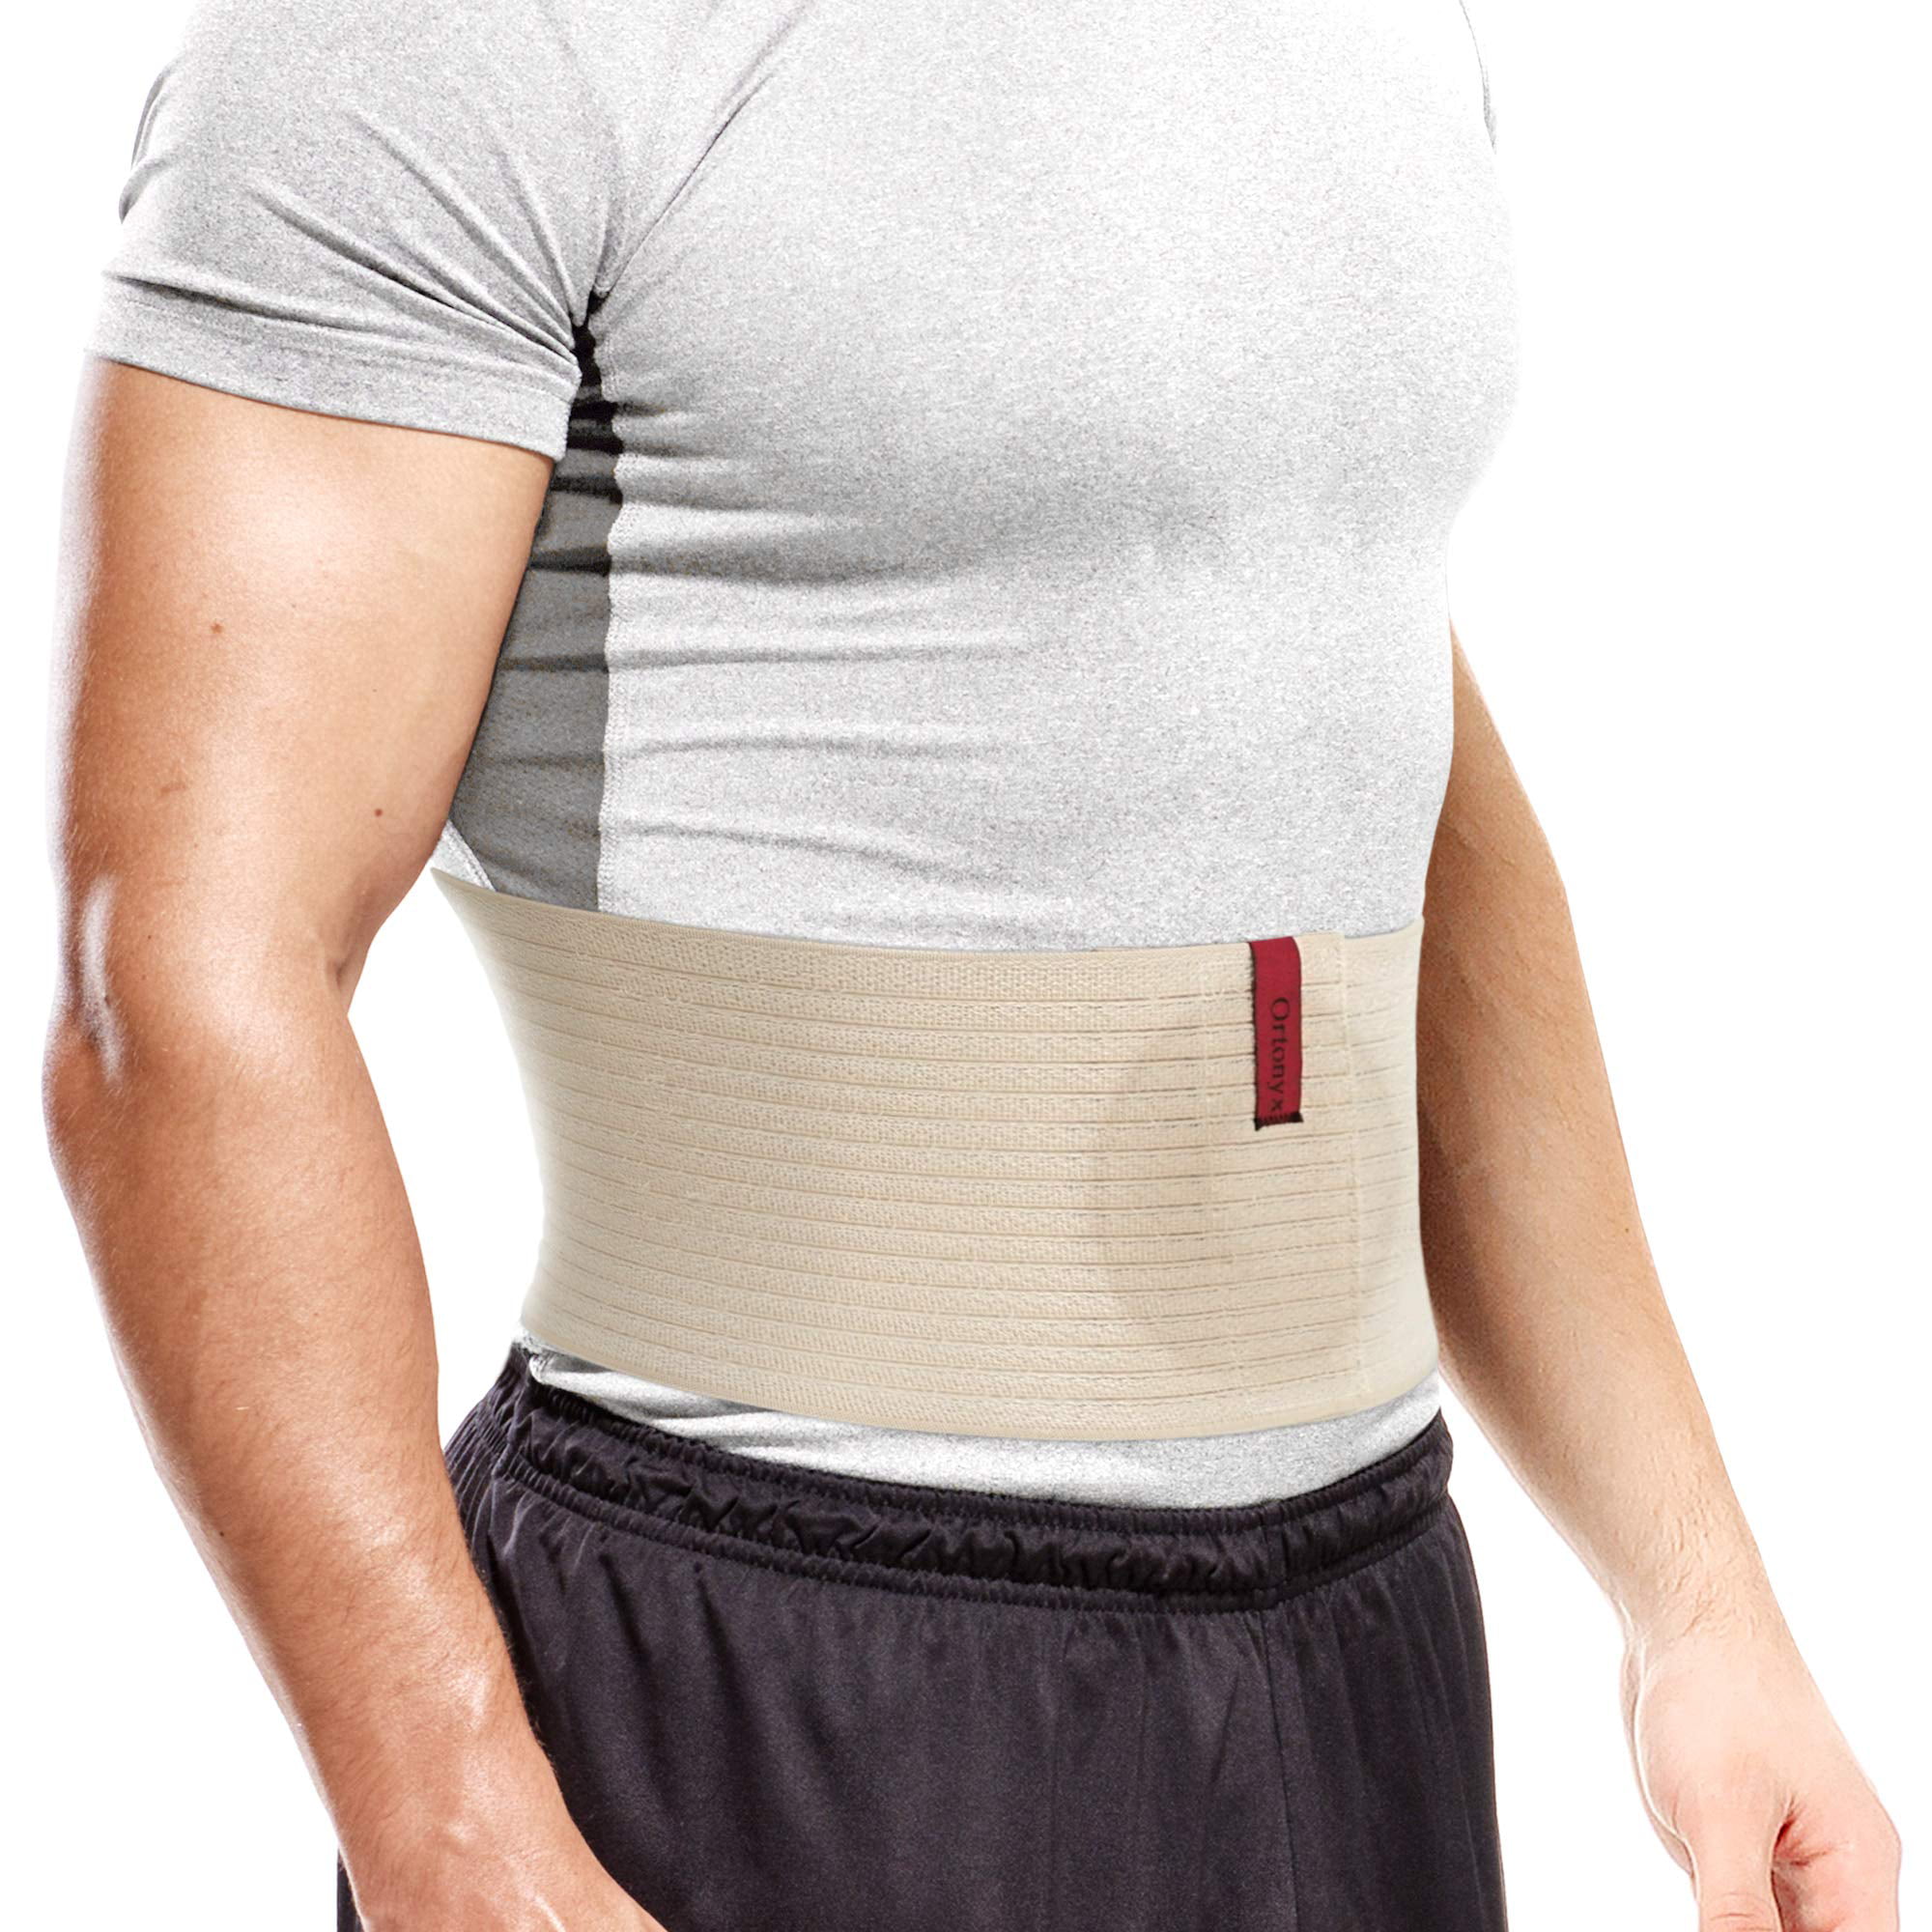 ORTONYX Lumbar Support Belt Lumbo-sacral Back Brace – UFEELGOOD